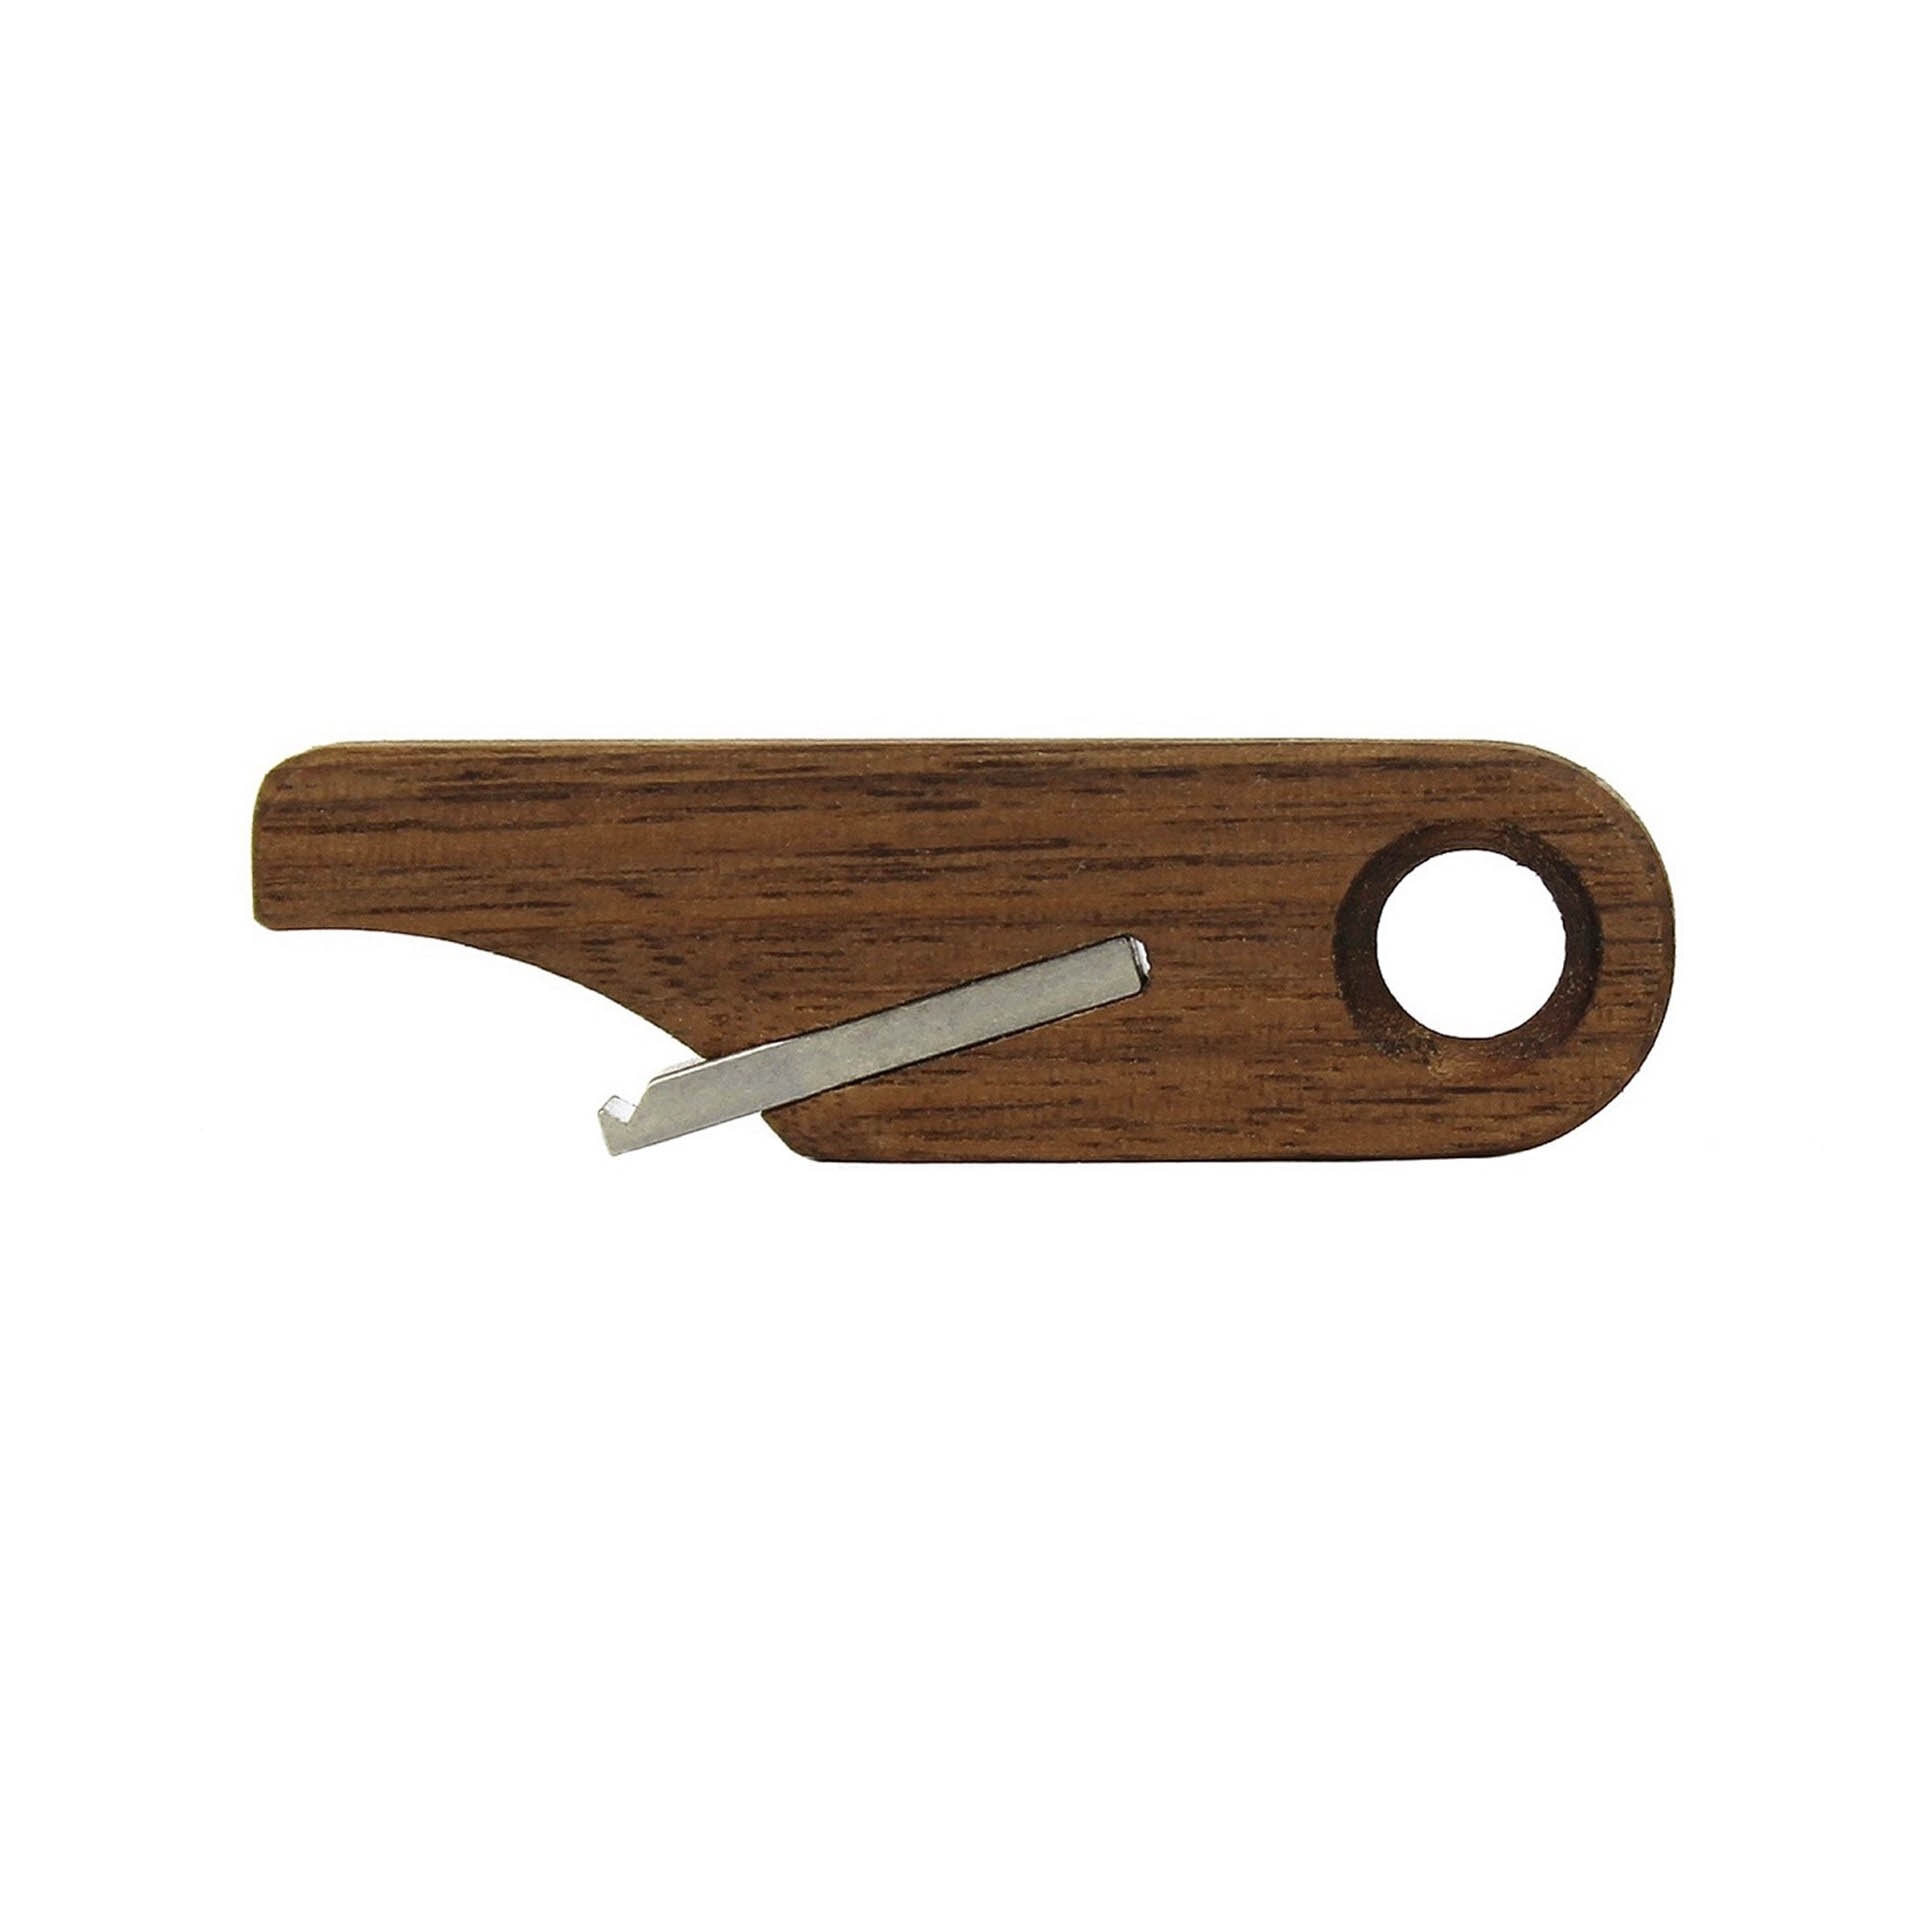 Wooden Bottle Opener Keychain by Rift Wood Company - Black Walnut.JPG